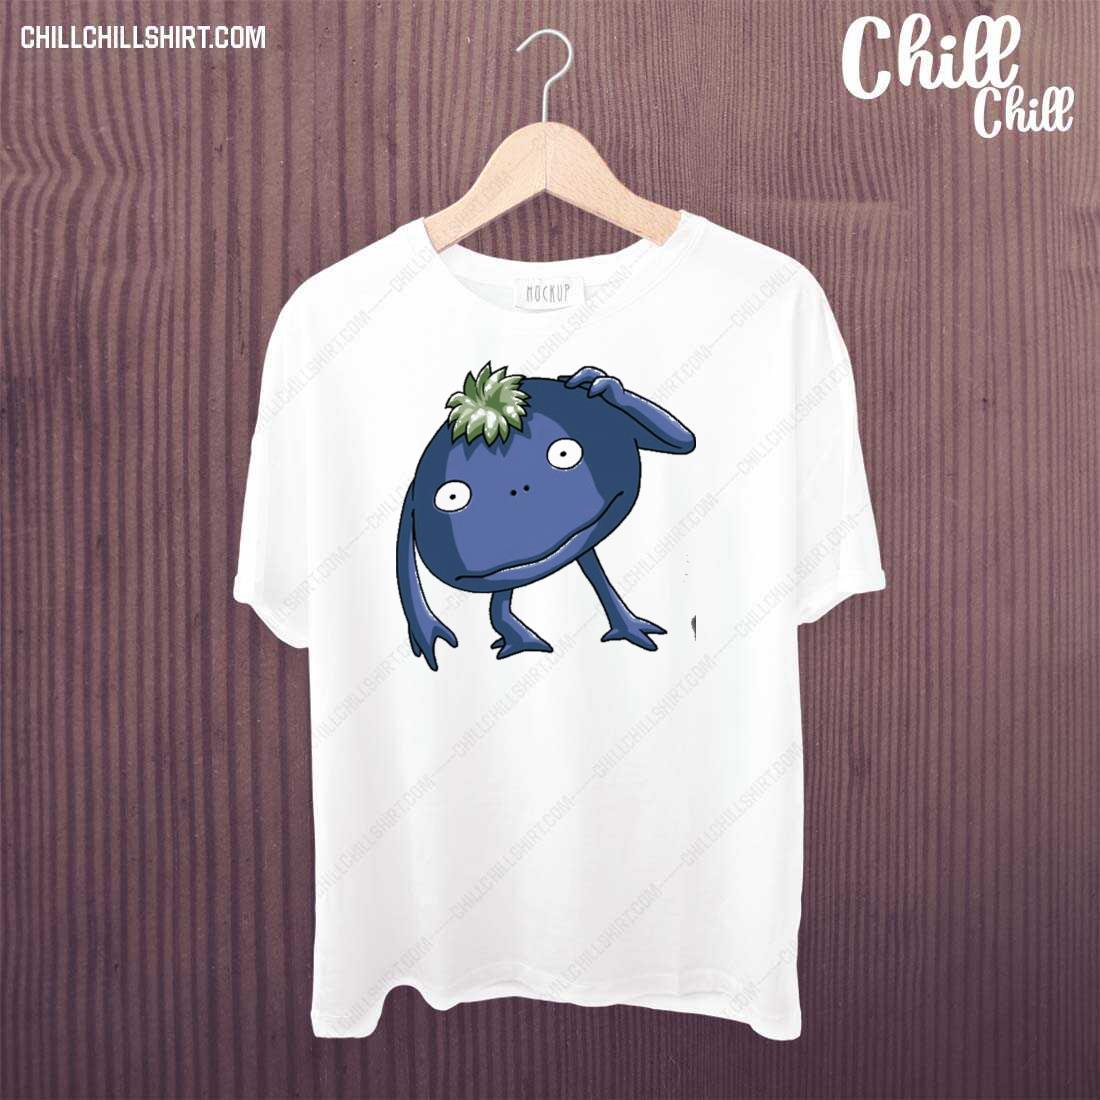 Official nu Chrono Trigger Funny Design T-shirt